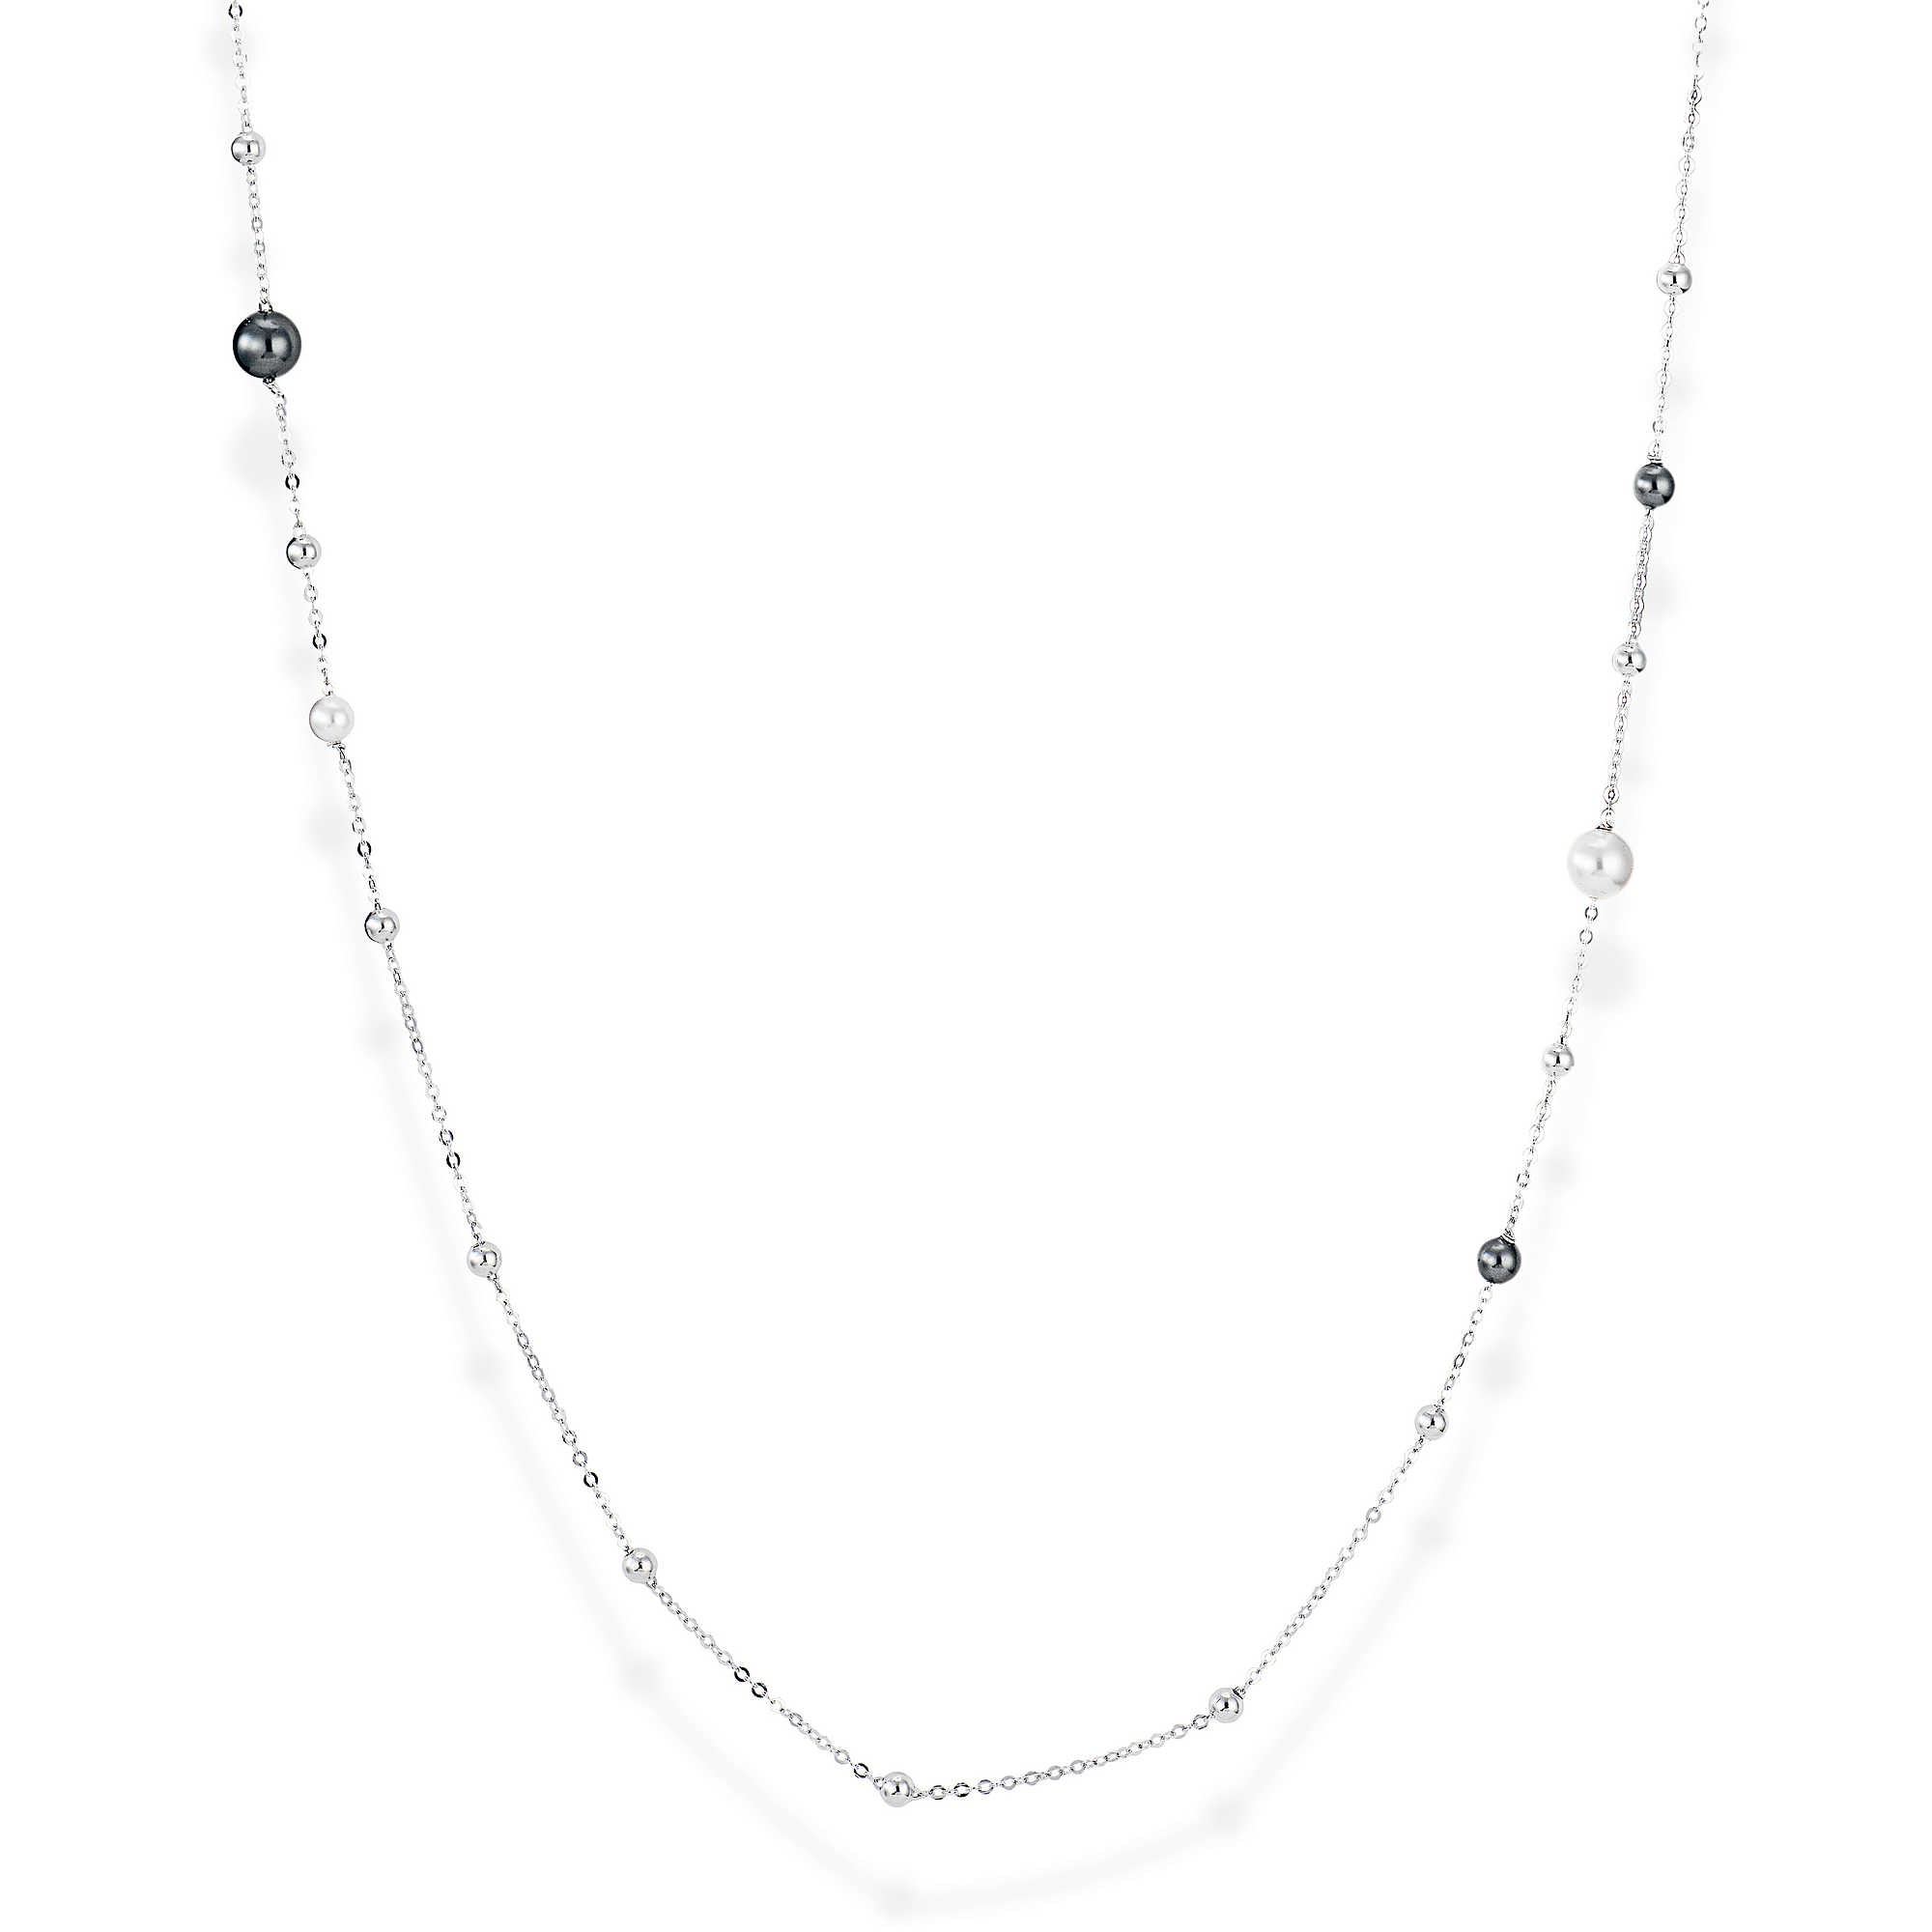 A-MEN: Collana donna in argento 925 con perle bicolore, lunghezza 92 cm regolabile, cl1pb